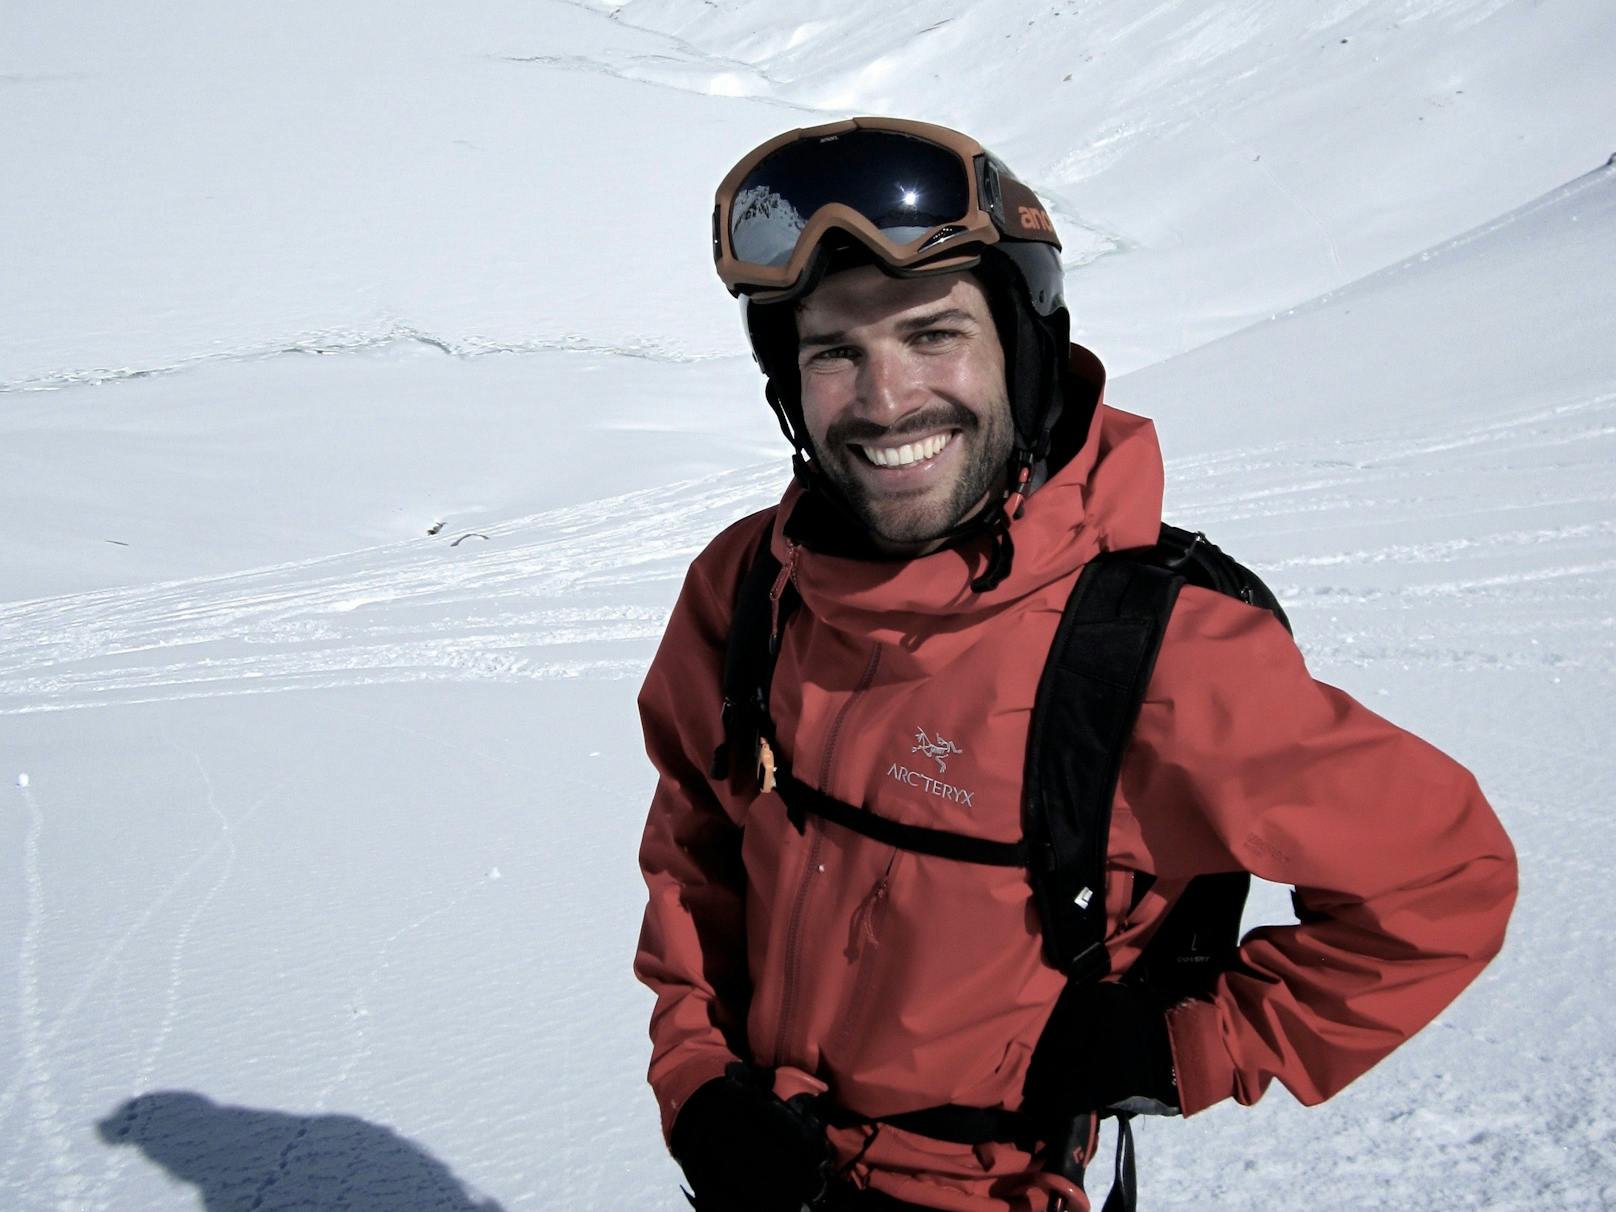 Alpine Gefahren werden mit fortschreitender Erderhitzung zunehmen, warnt der Tiroler Bergführer Thomas Wanner.